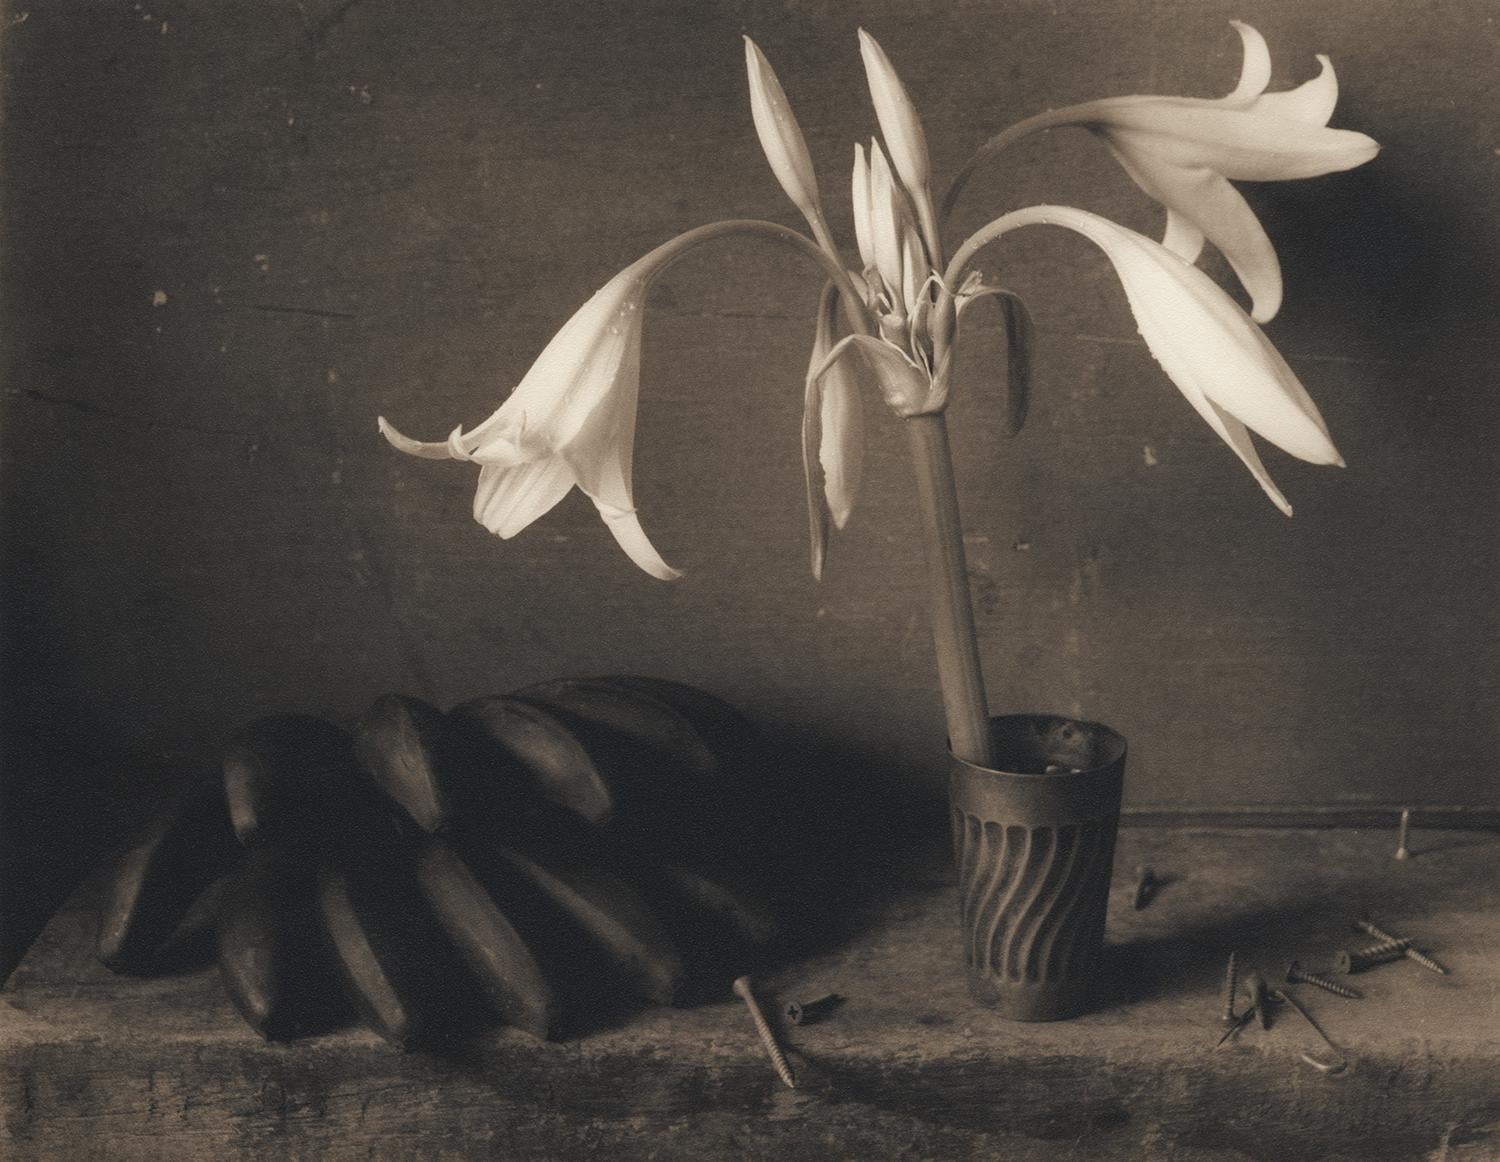 David Halliday Still-Life Photograph – Lilien und Pflanzgefäße: Sepia Toned Stillleben Fotografie von Blumen und Früchten